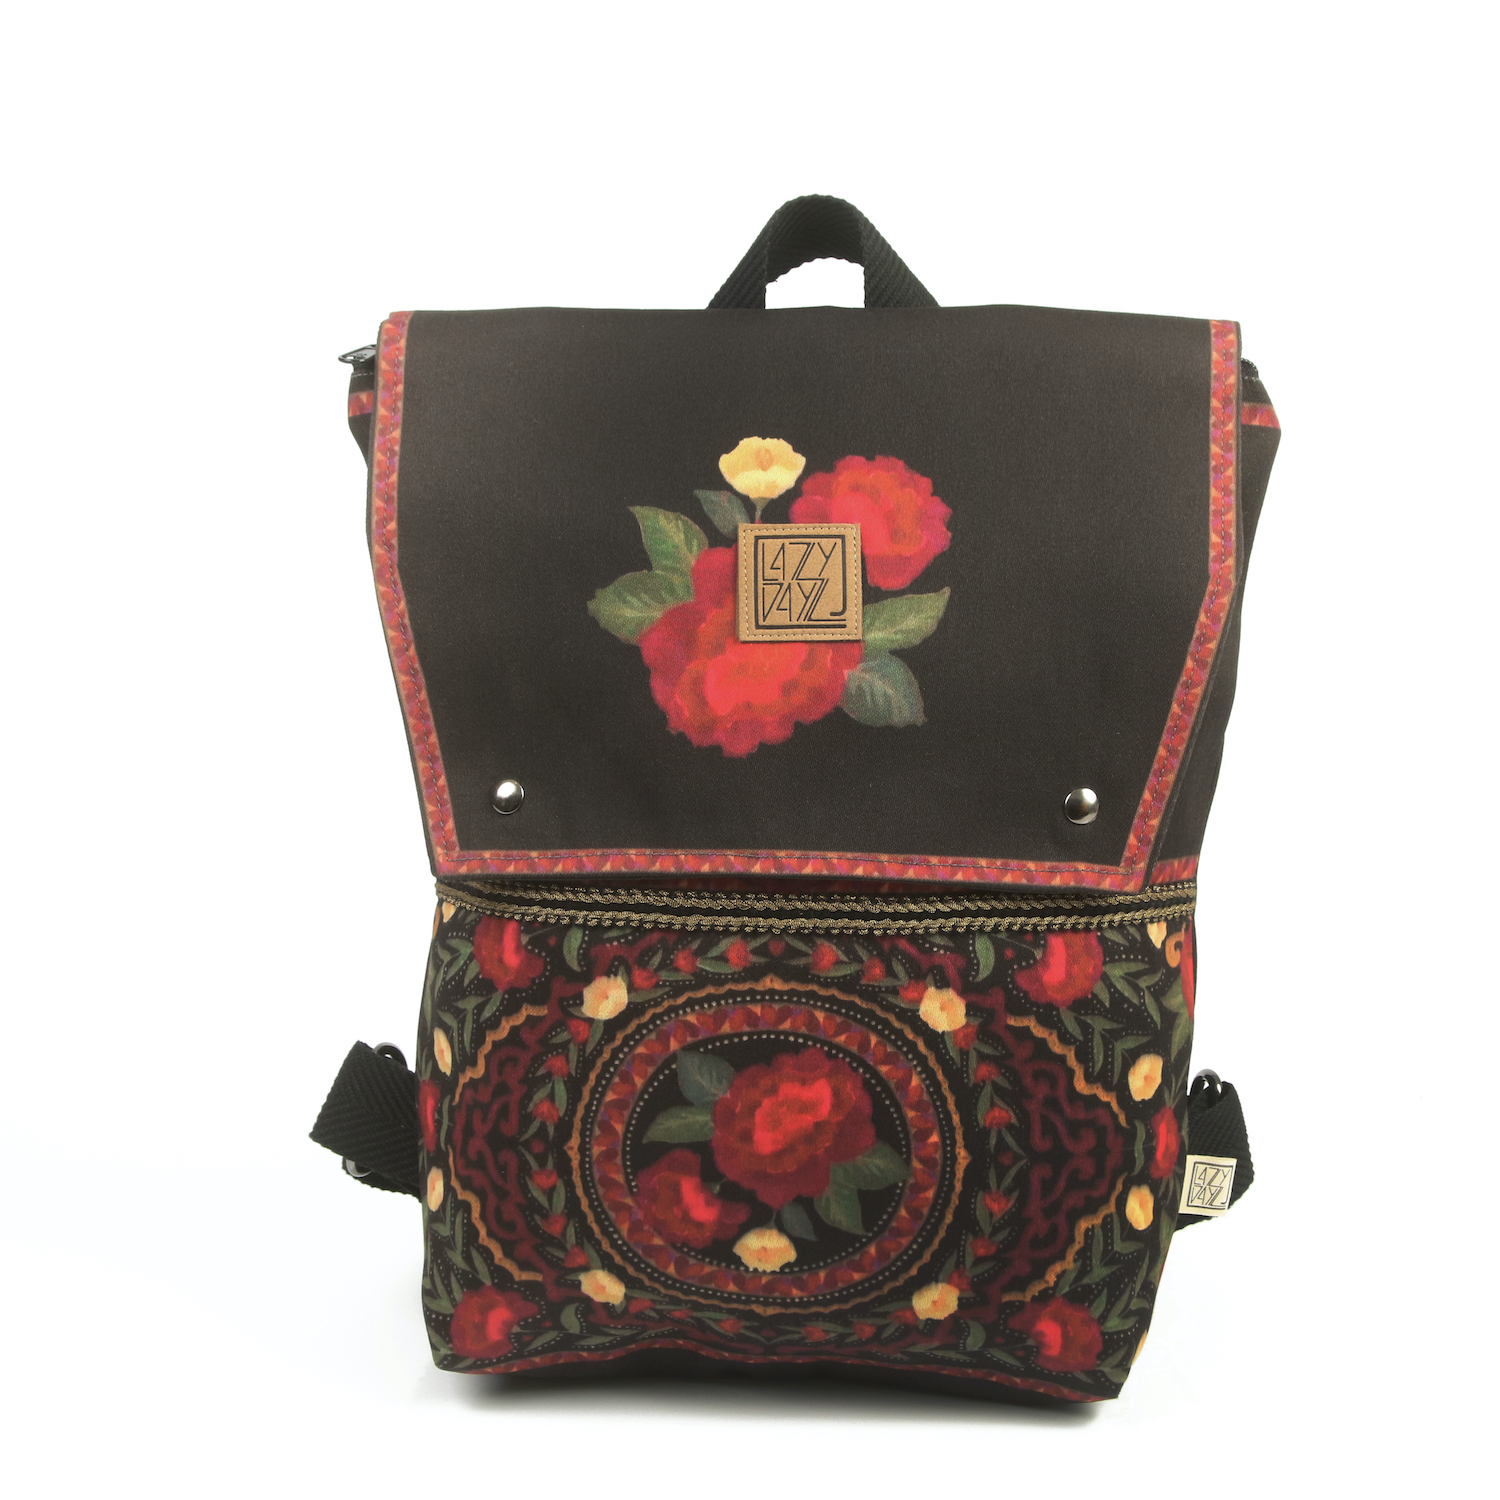 LazyDayz Designs Backpack γυναικείος σάκος πλάτης χειροποίητος bb0703